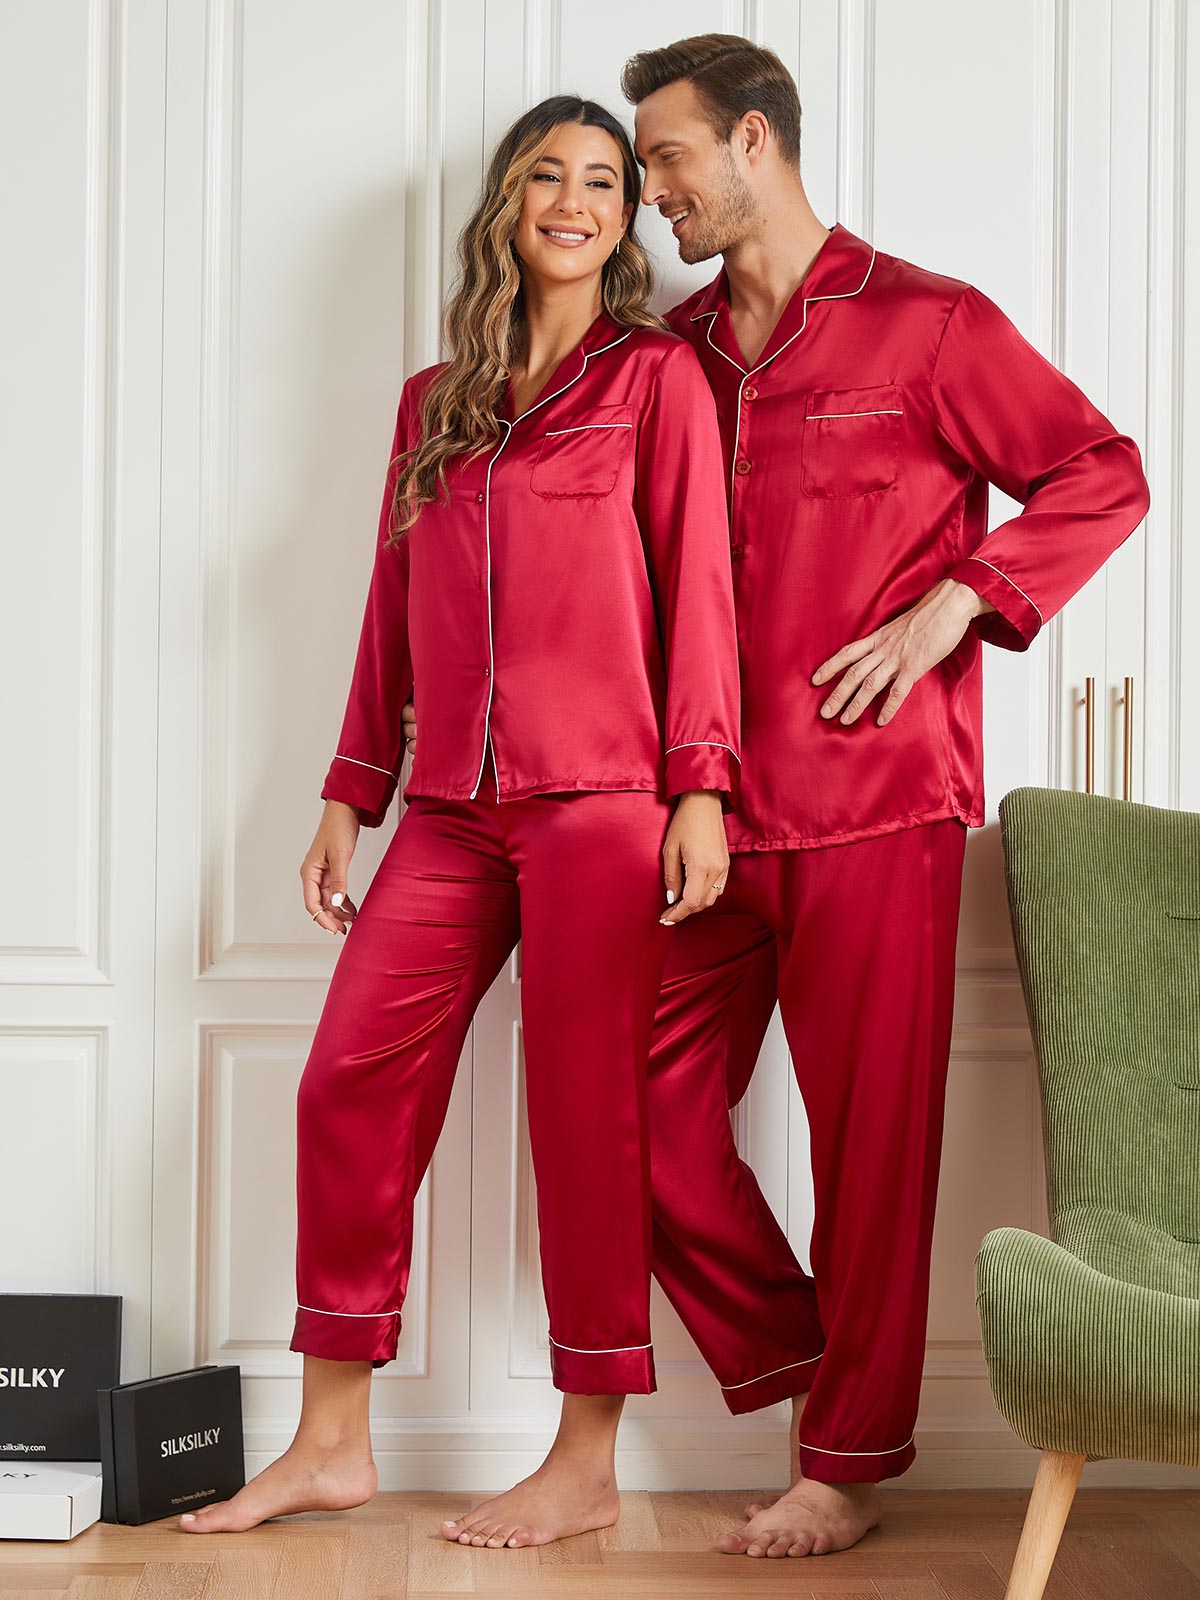 Silksilky Short Sleeve Silk Pajama Set Pure Silk Pajamas – SILKSILKY